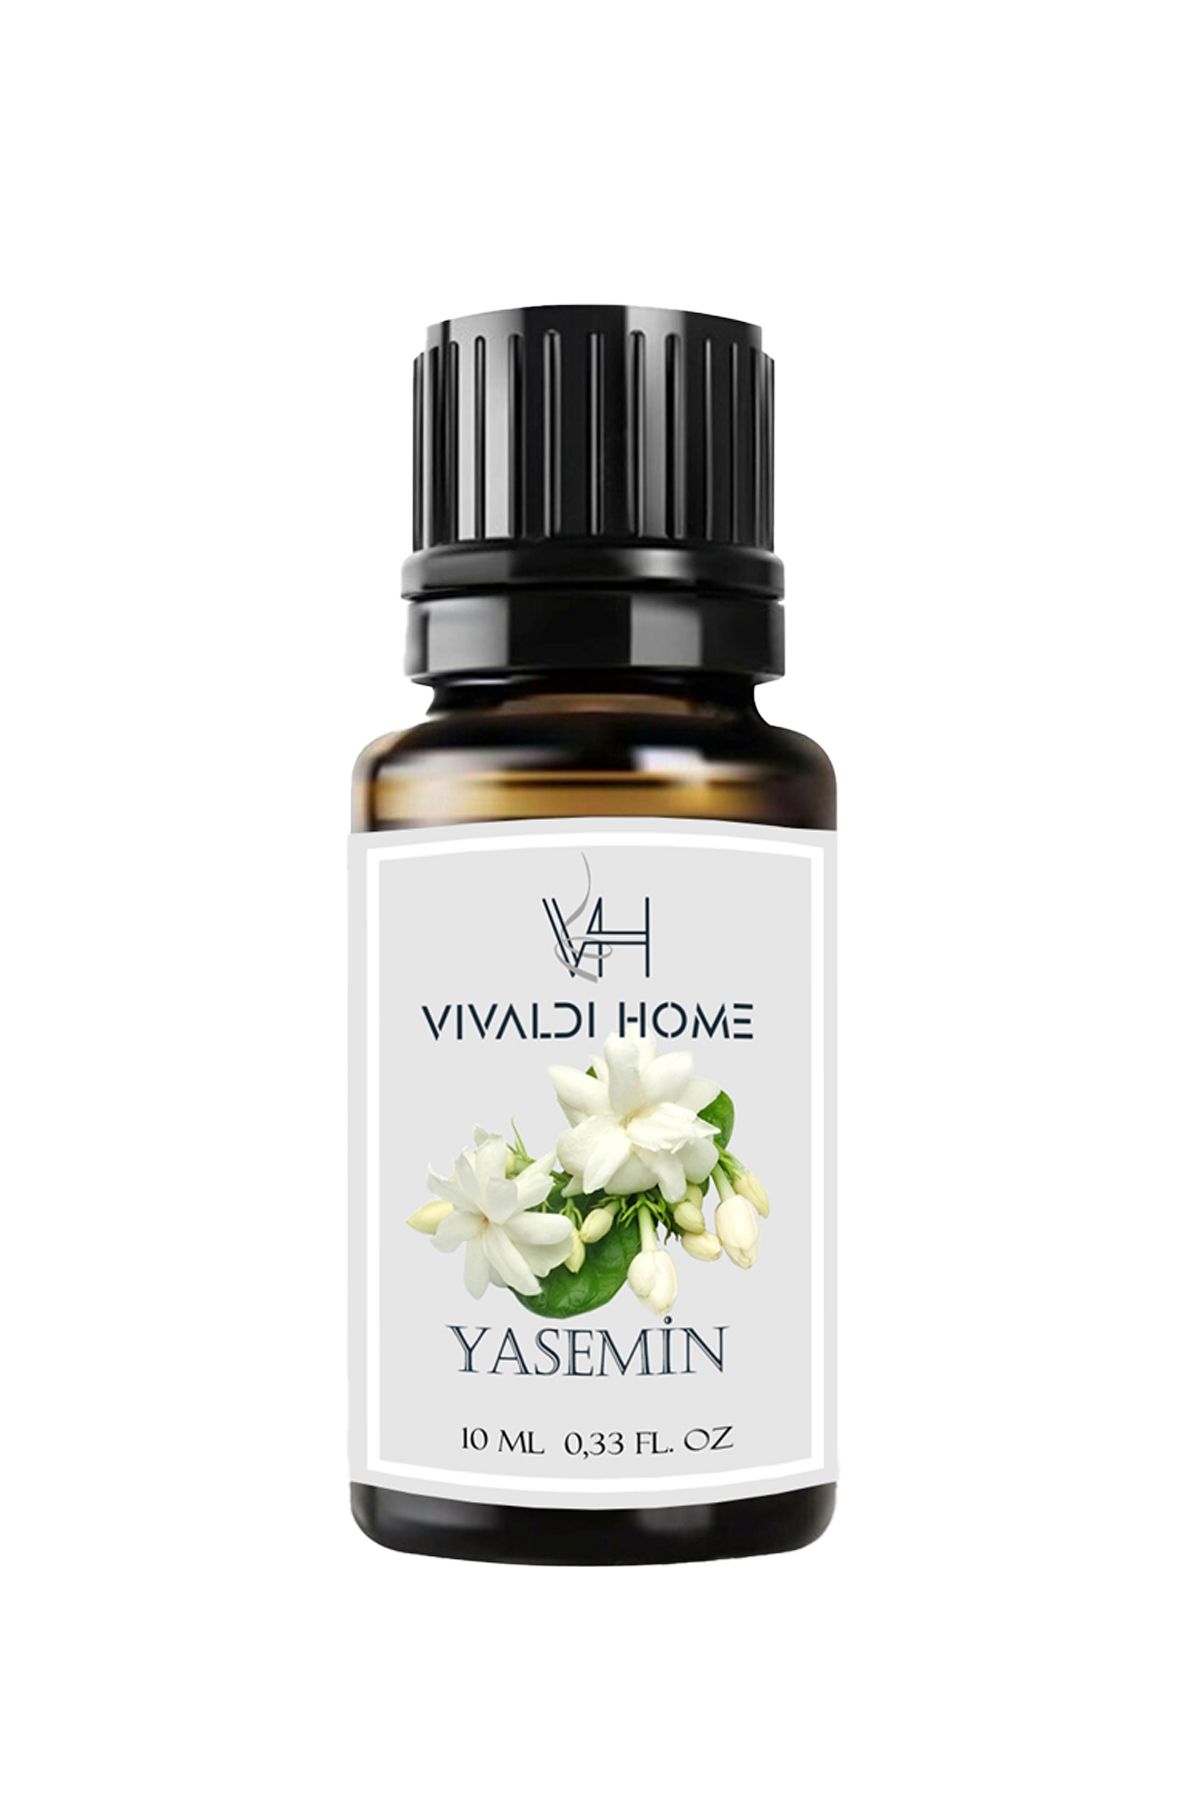 Vivaldi Home Yasemin Çiçeği Aromaterapi Uçucu Yağ Esansiyel Buhurdanlık Yağı 10ml